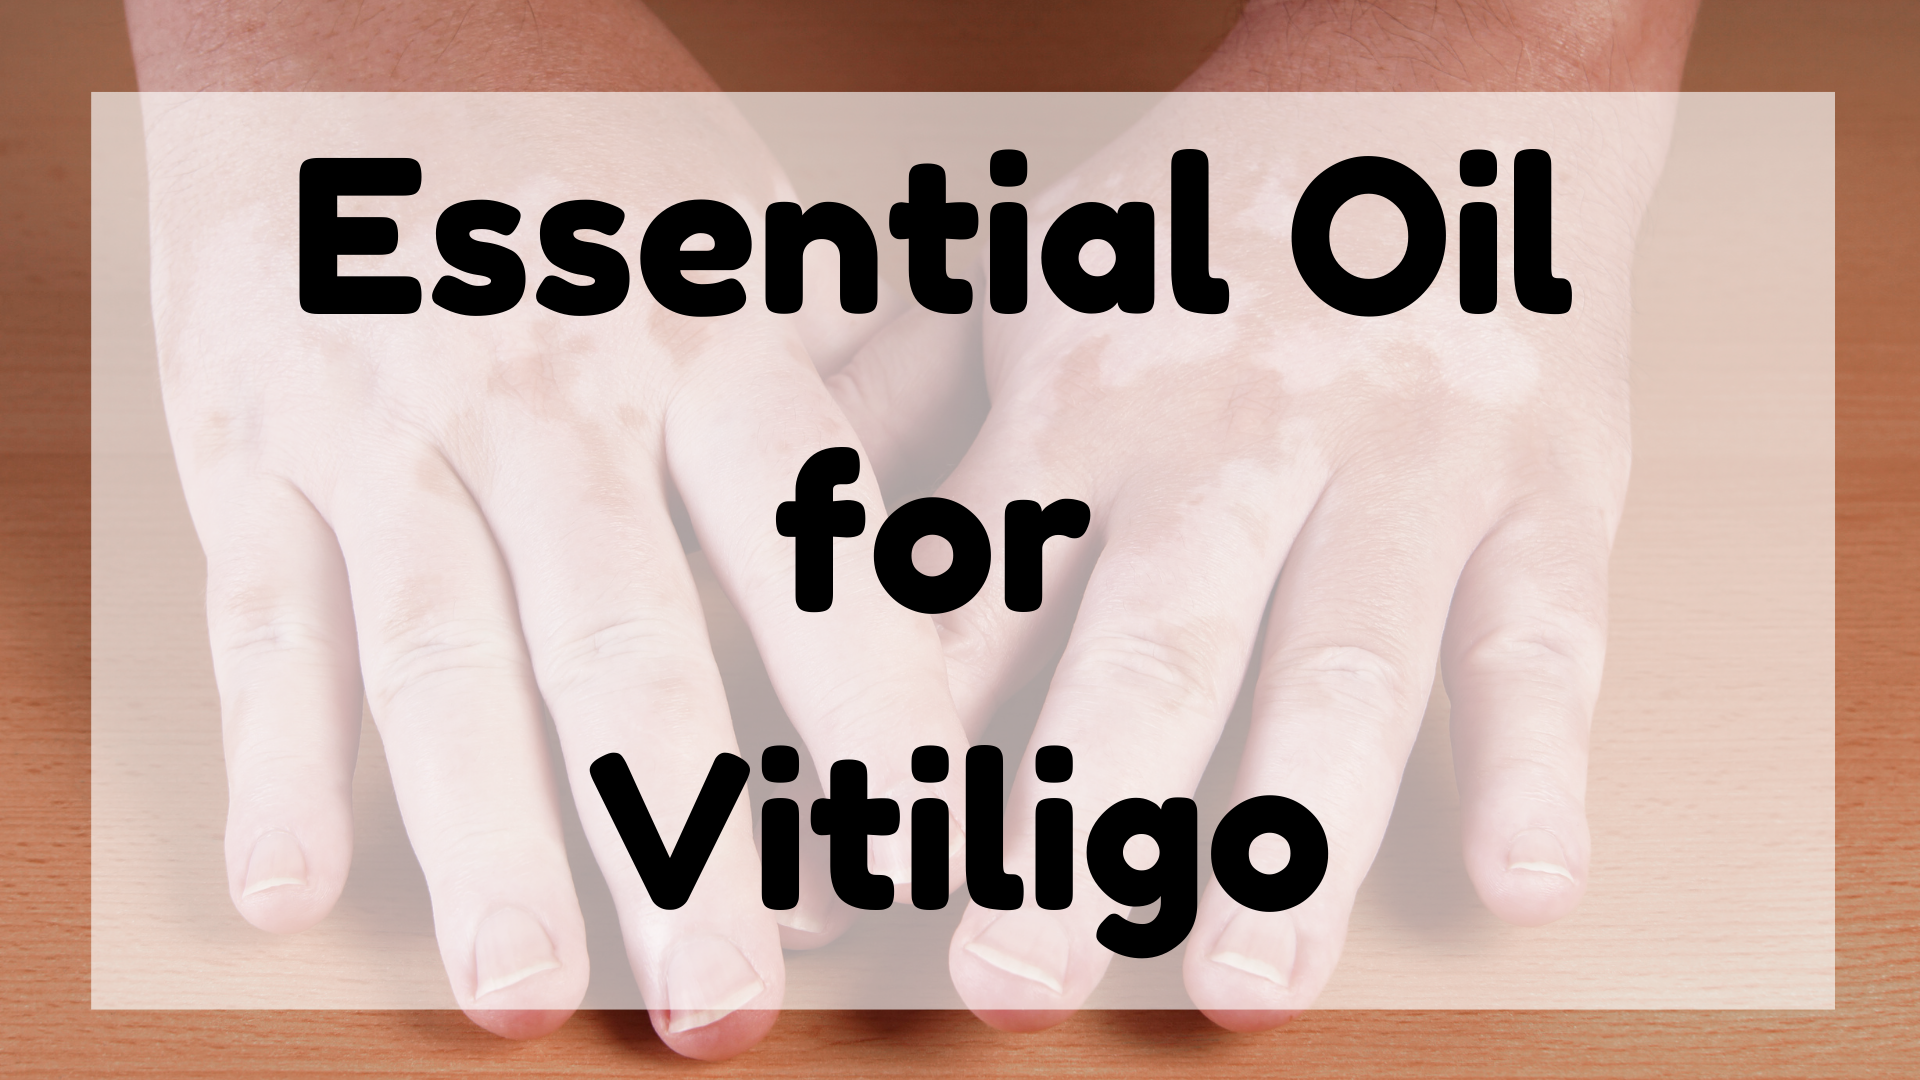 Essential Oil for Vitiligo featured image